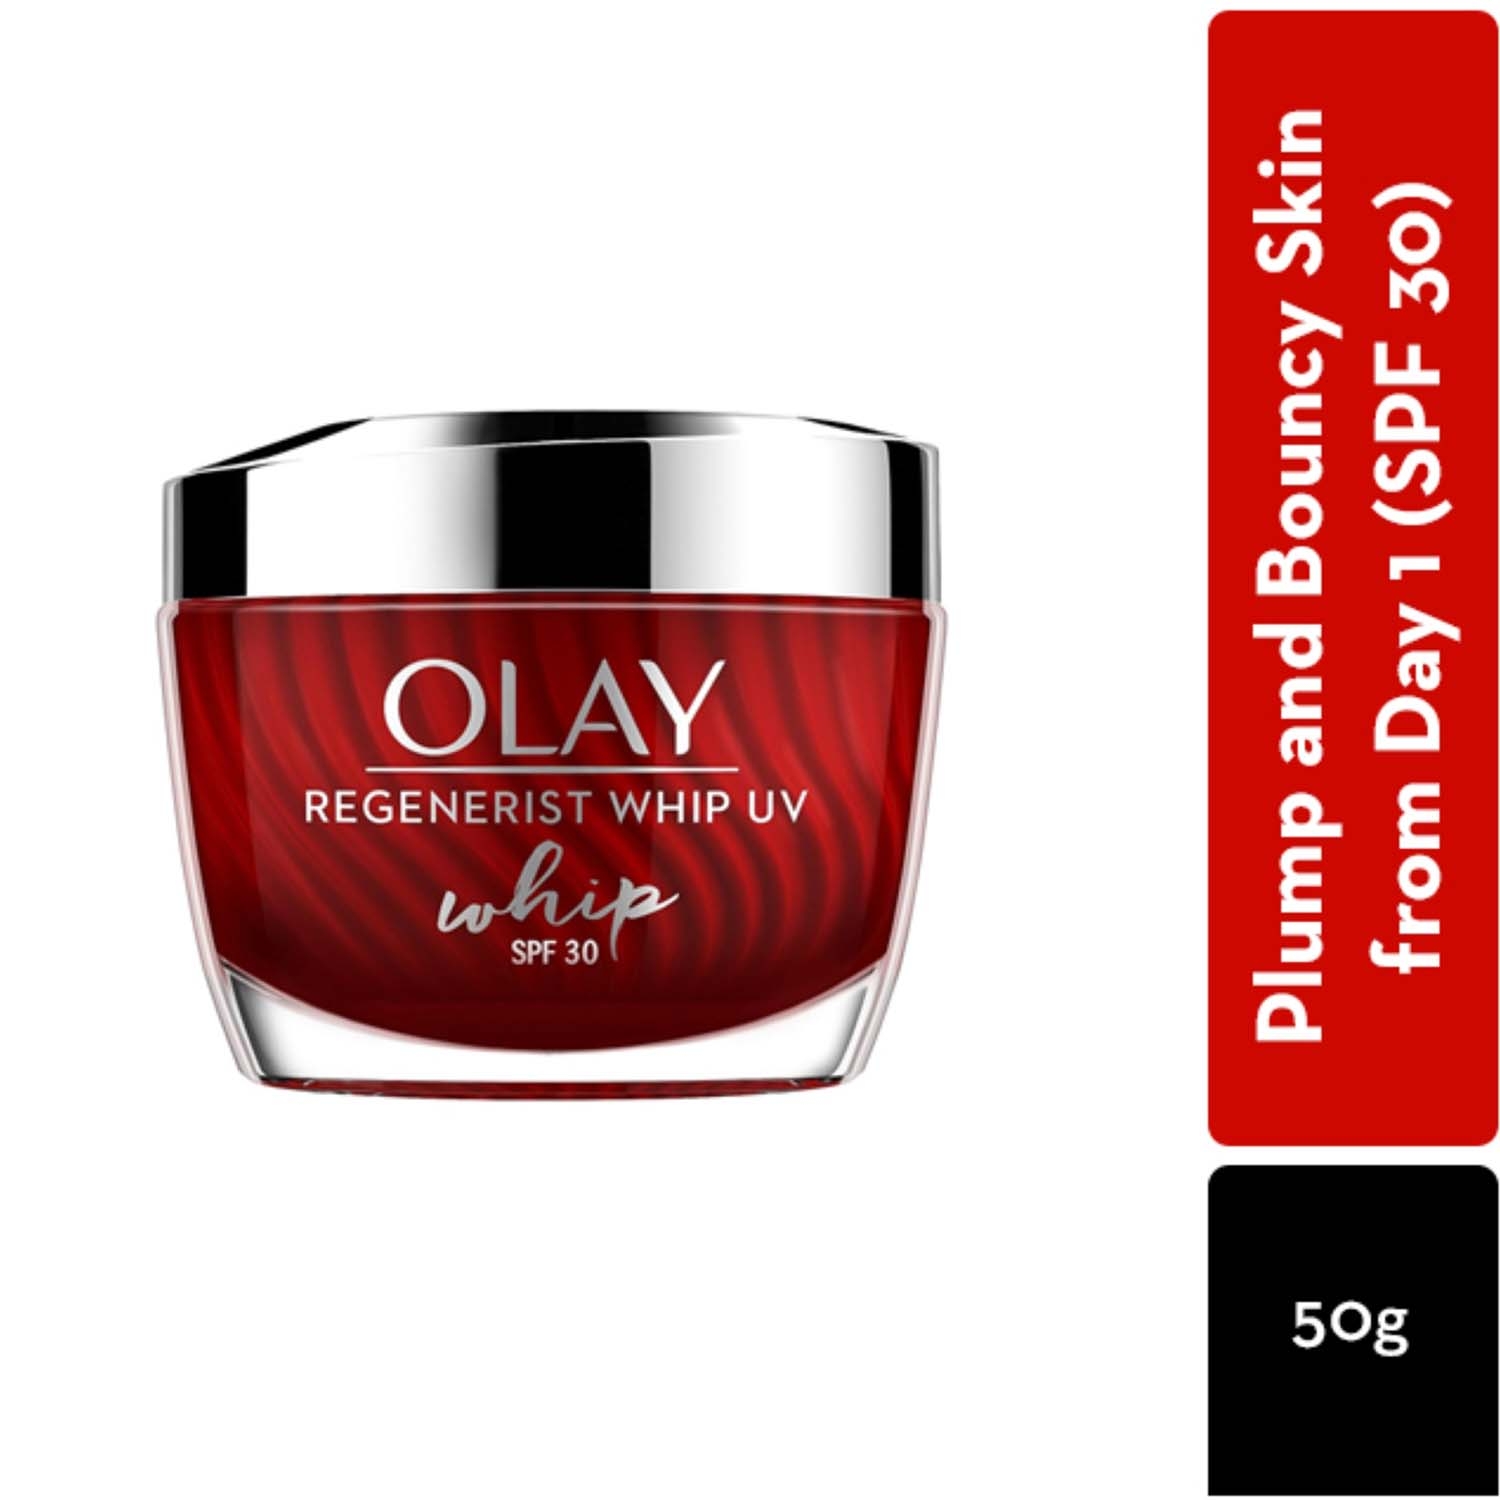 Olay | Olay Regenerist Whip Day Cream SPF 30 (50g)